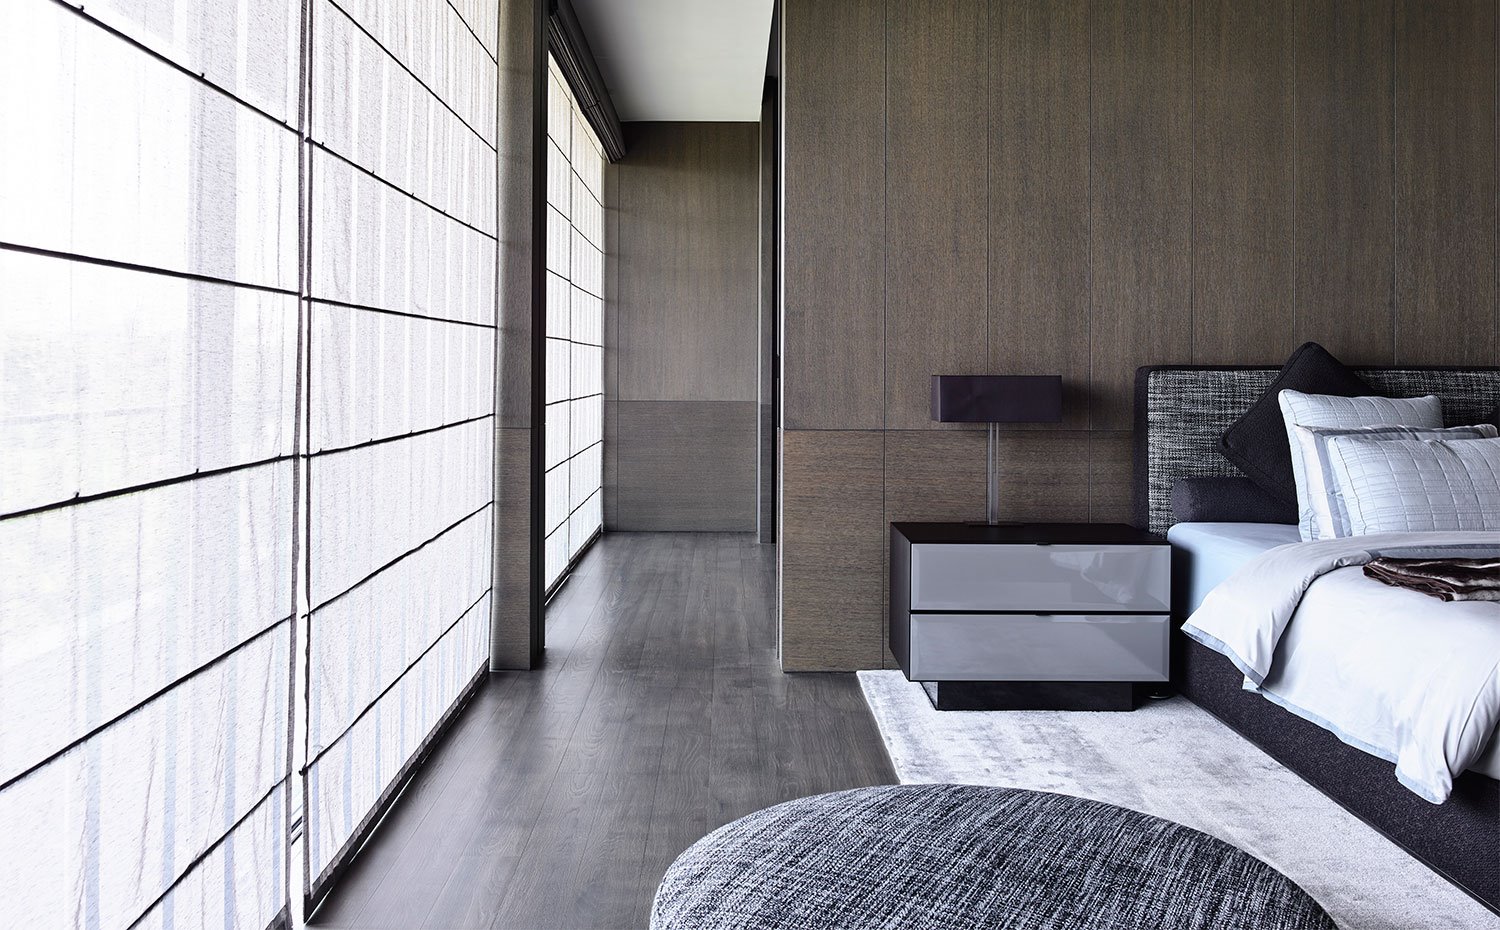 Dormitorio con paredes revestidas de madera, estores plegables de tela frente a cerramientos de cristal